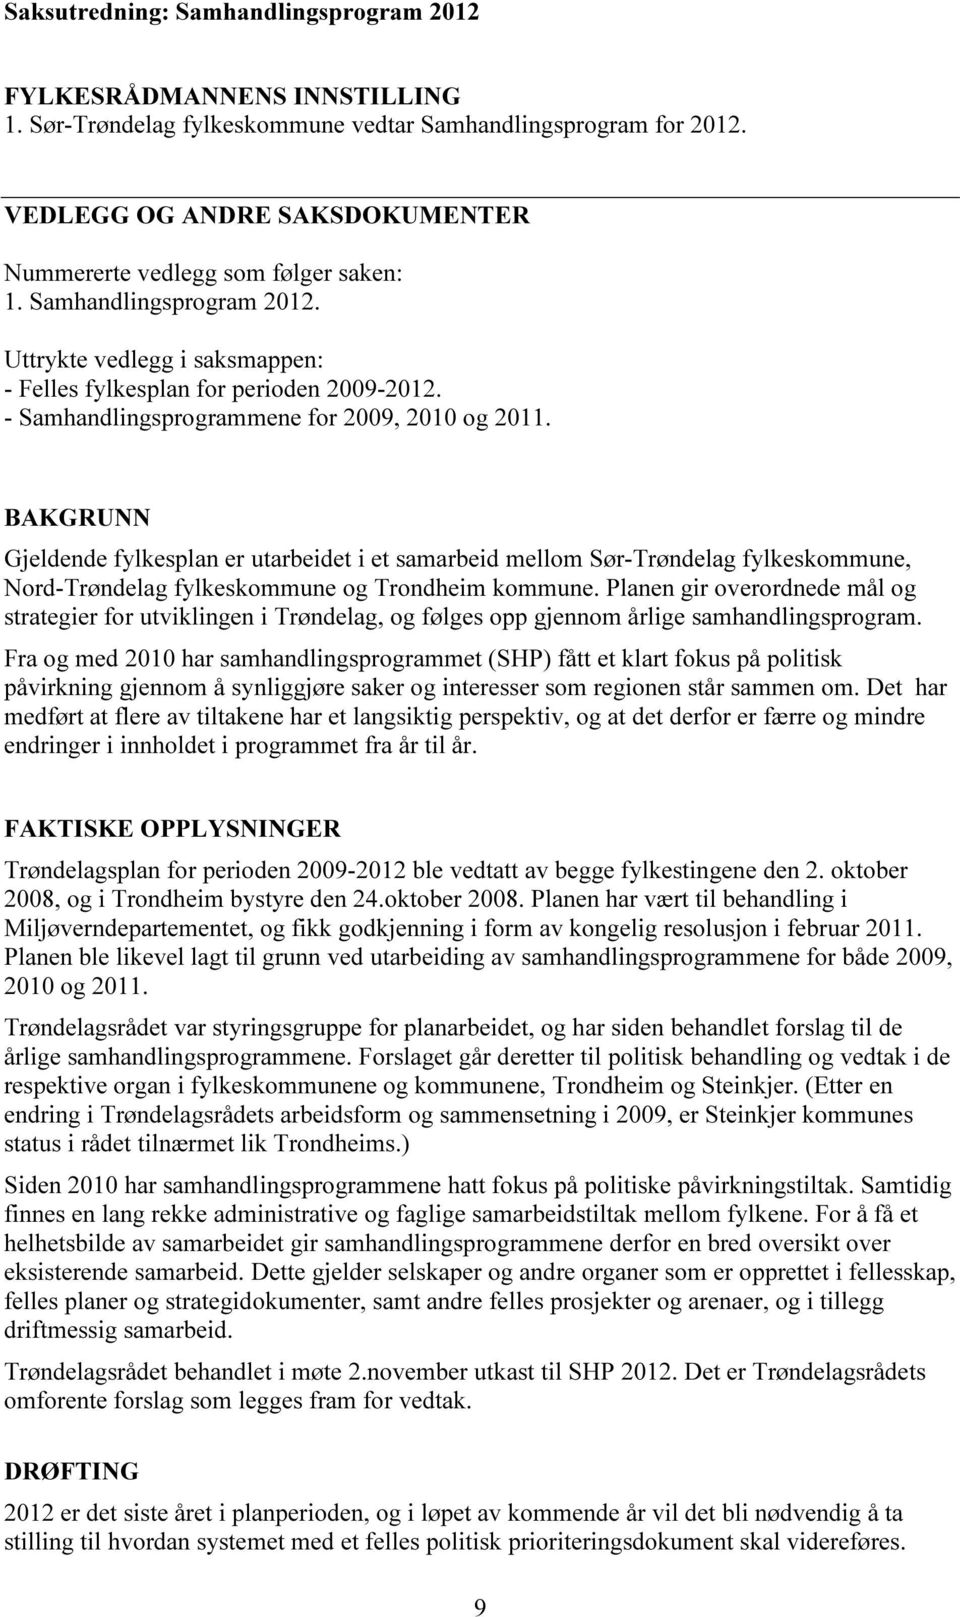 - Samhandlingsprogrammene for 2009, 2010 og 2011. BAKGRUNN Gjeldende fylkesplan er utarbeidet i et samarbeid mellom Sør-Trøndelag fylkeskommune, Nord-Trøndelag fylkeskommune og Trondheim kommune.